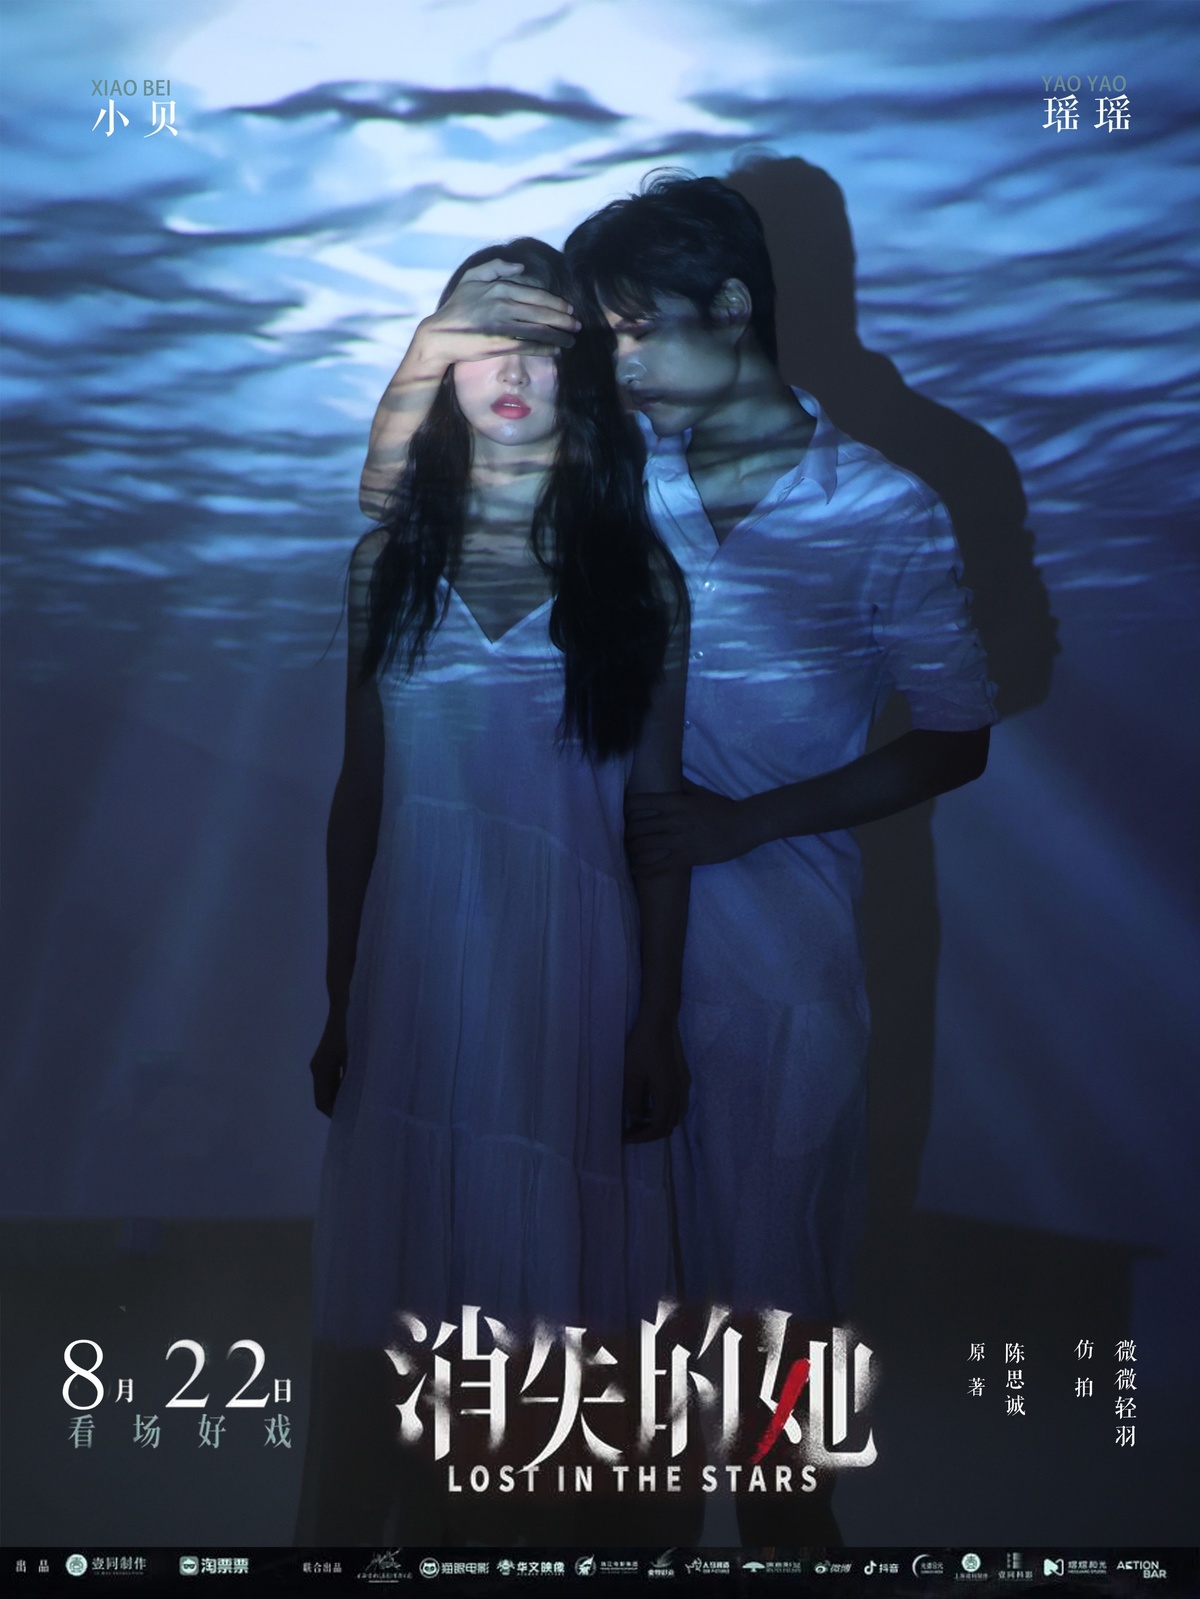 电影《水下》的巨型电影海报图像